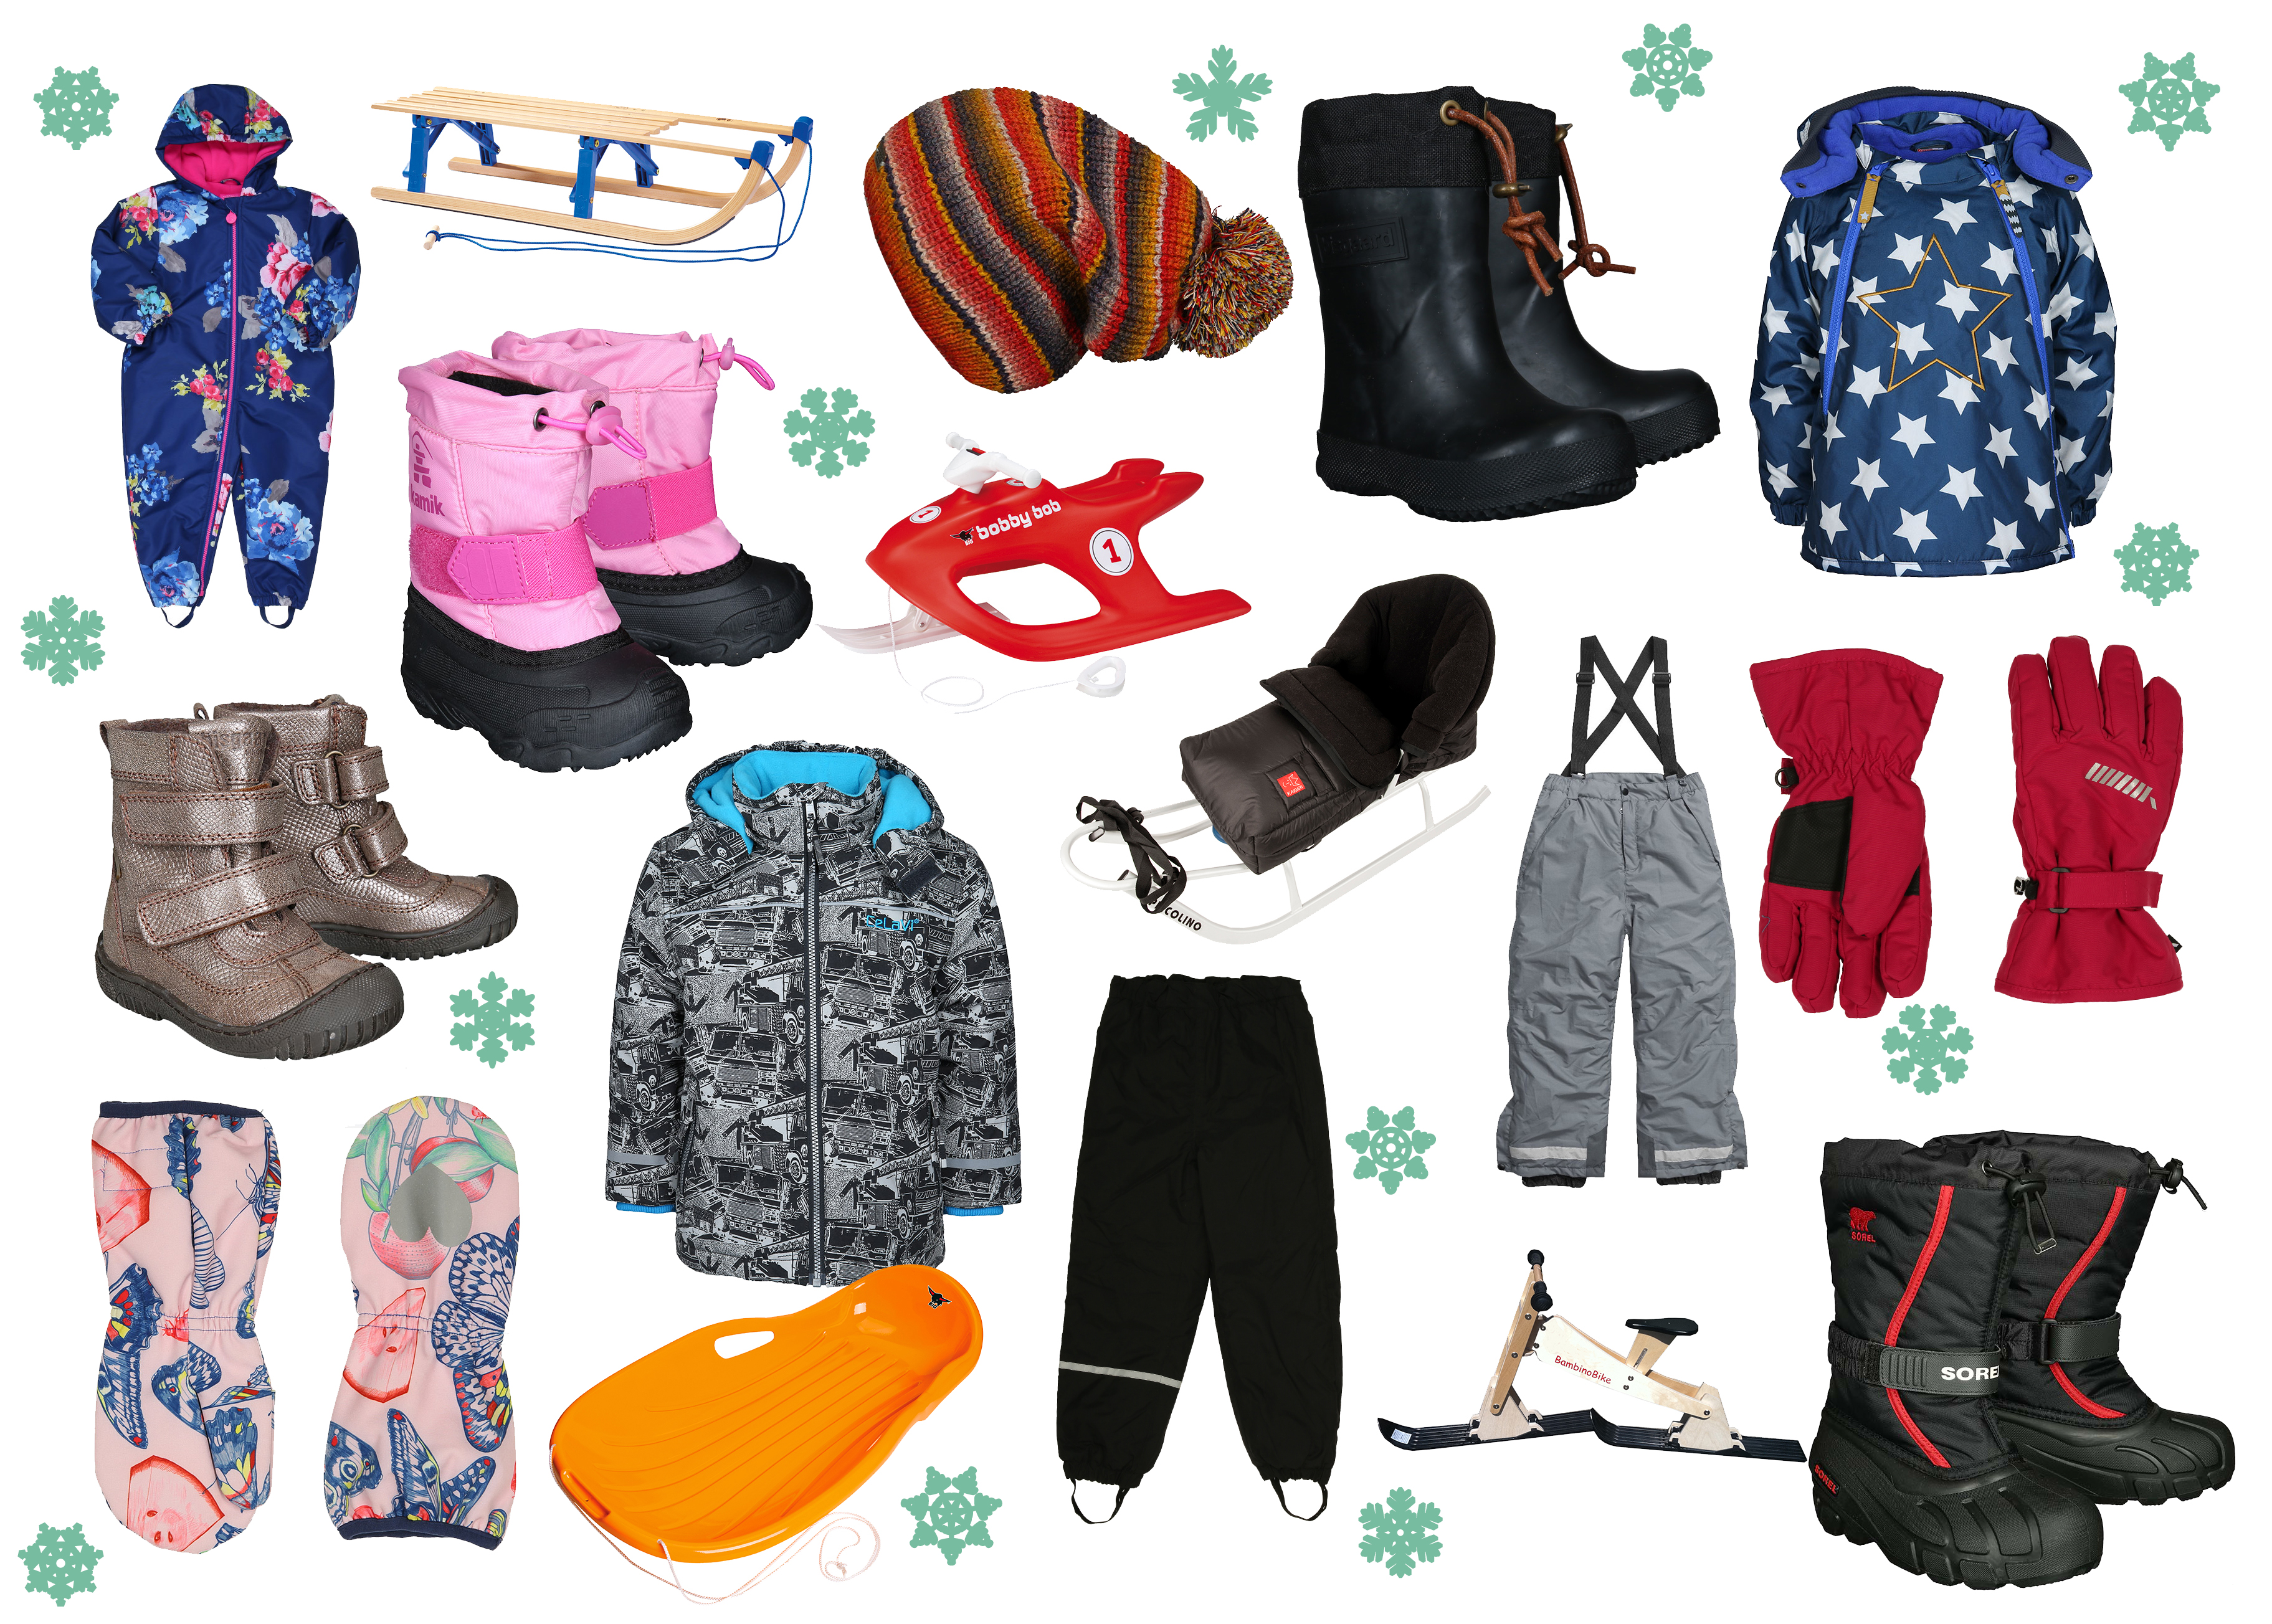 Winter-Schnee-Kleidung-Kinder-tausendkind-Schneeanzug-Schlitten-Schneebob-Outdoor-Fun-Funktionskleidung-Kids